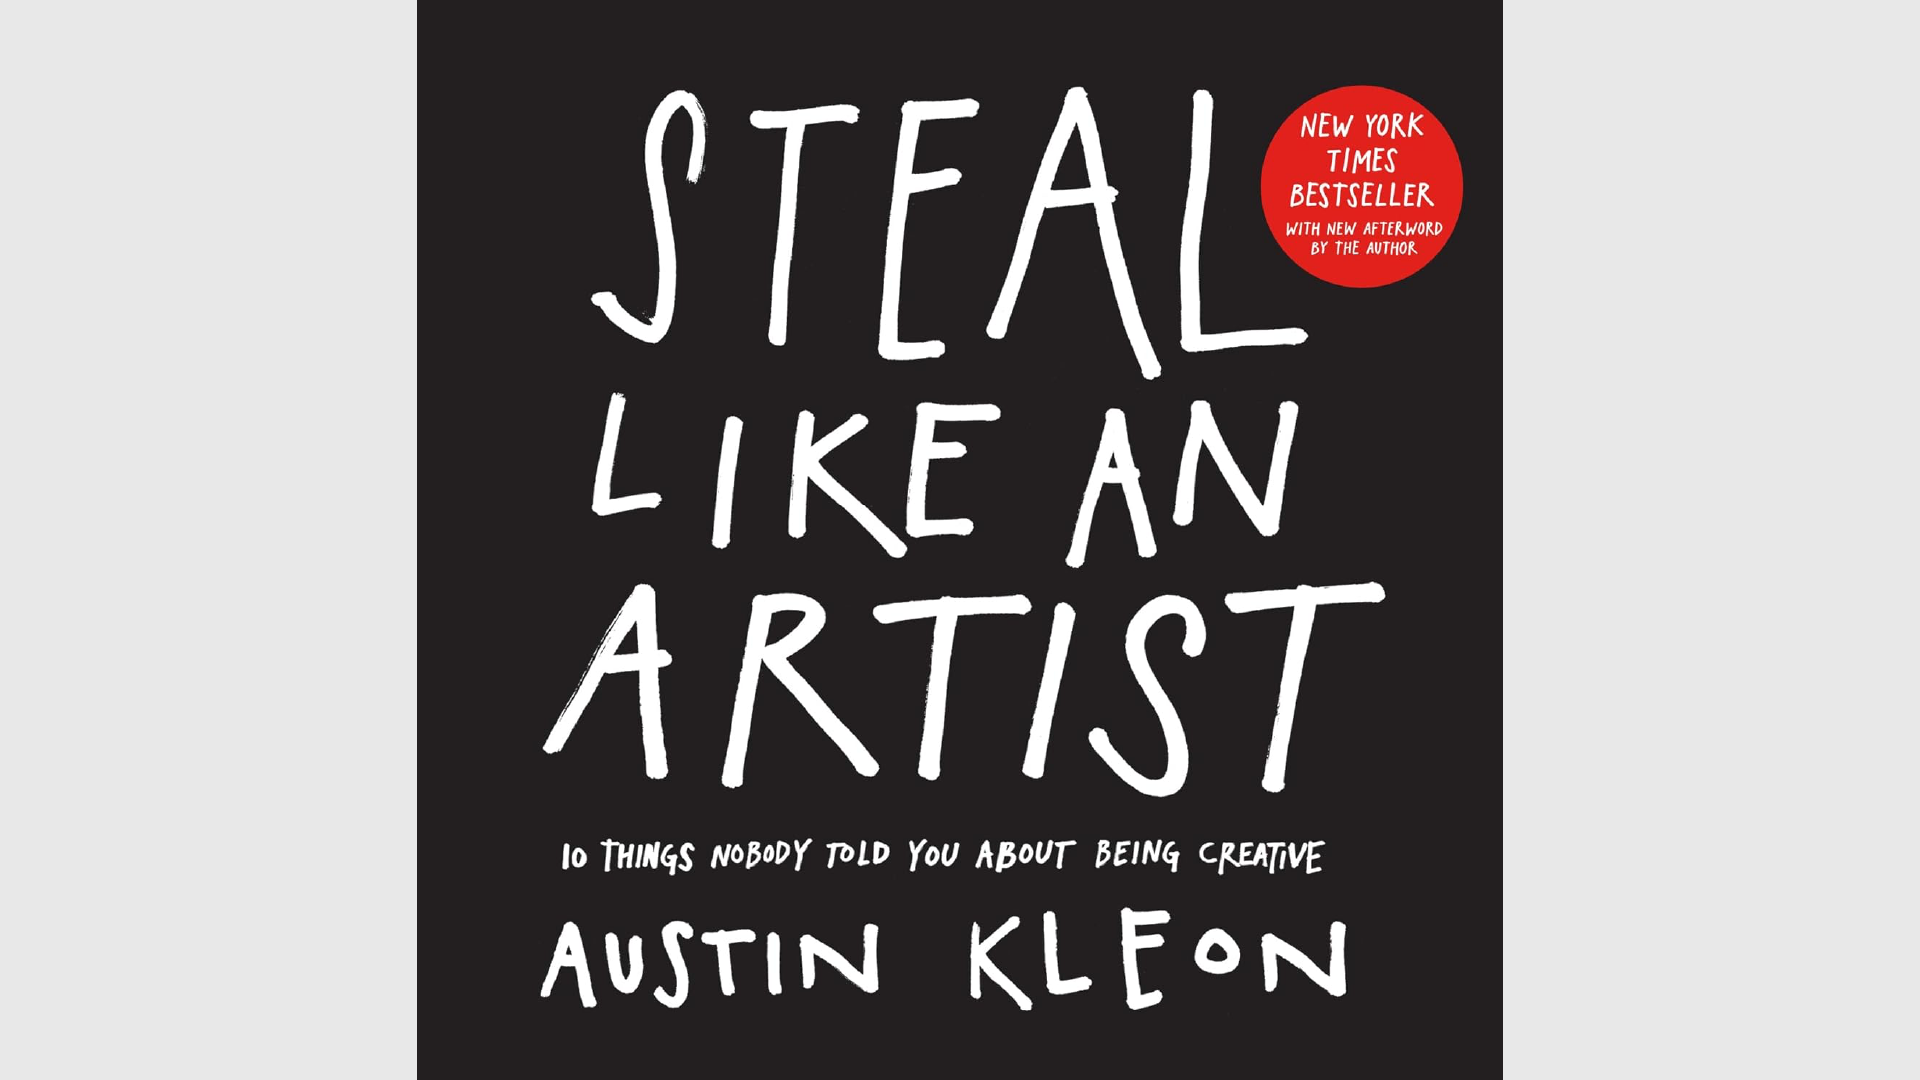 Summary: Steal Like An Artist by Austin Kleon